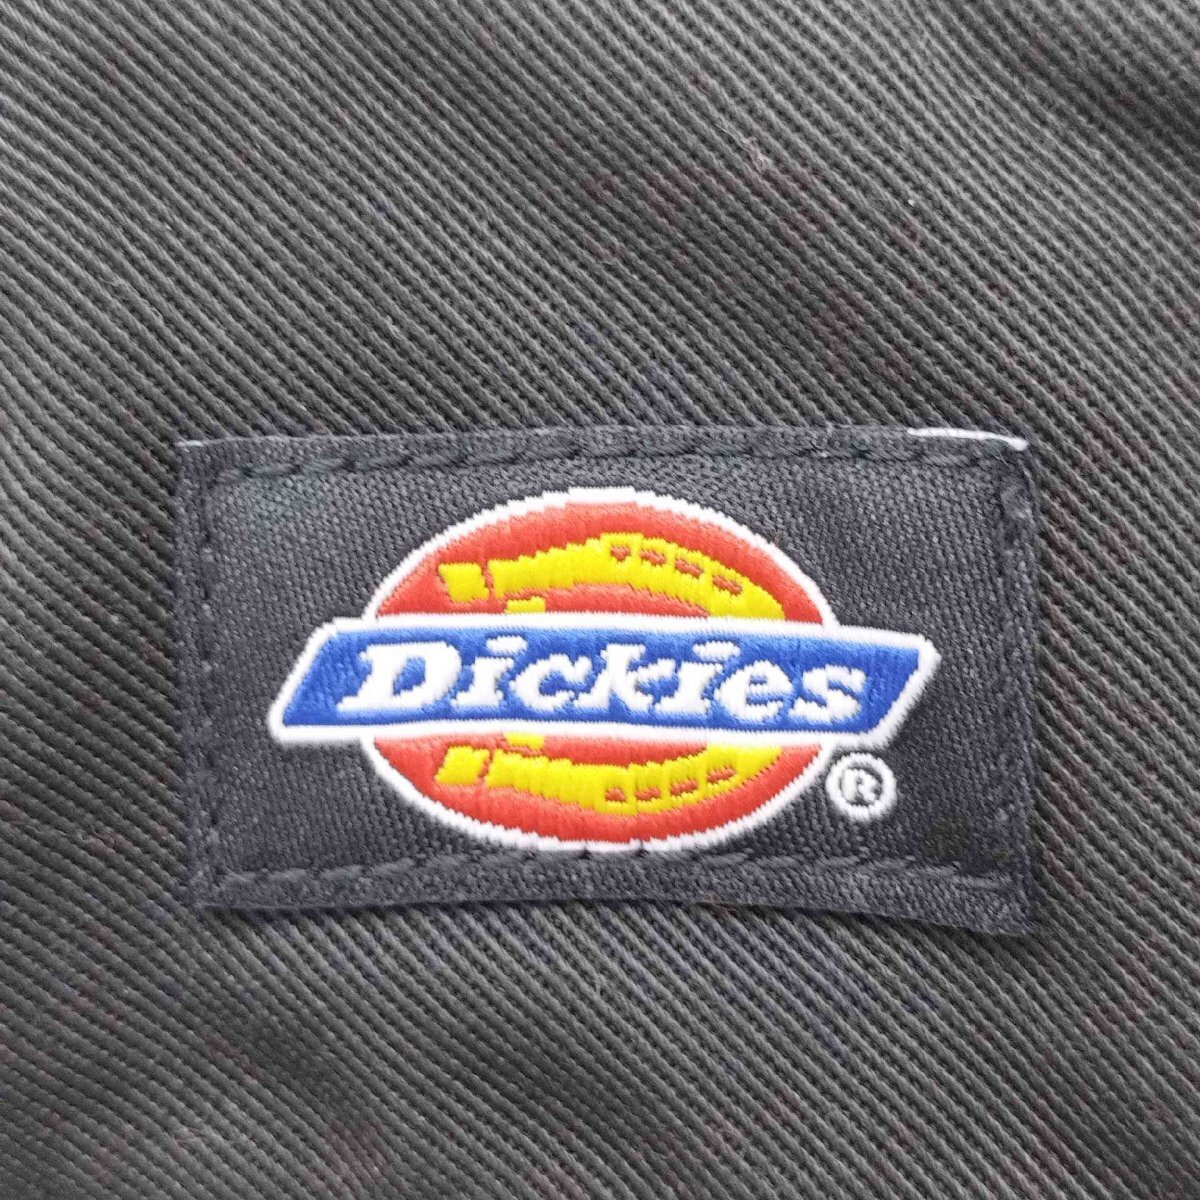 Dickies(ディッキーズ) チノパン コットンフランネルパンツ メンズ 30 中古 古着 0224_画像6